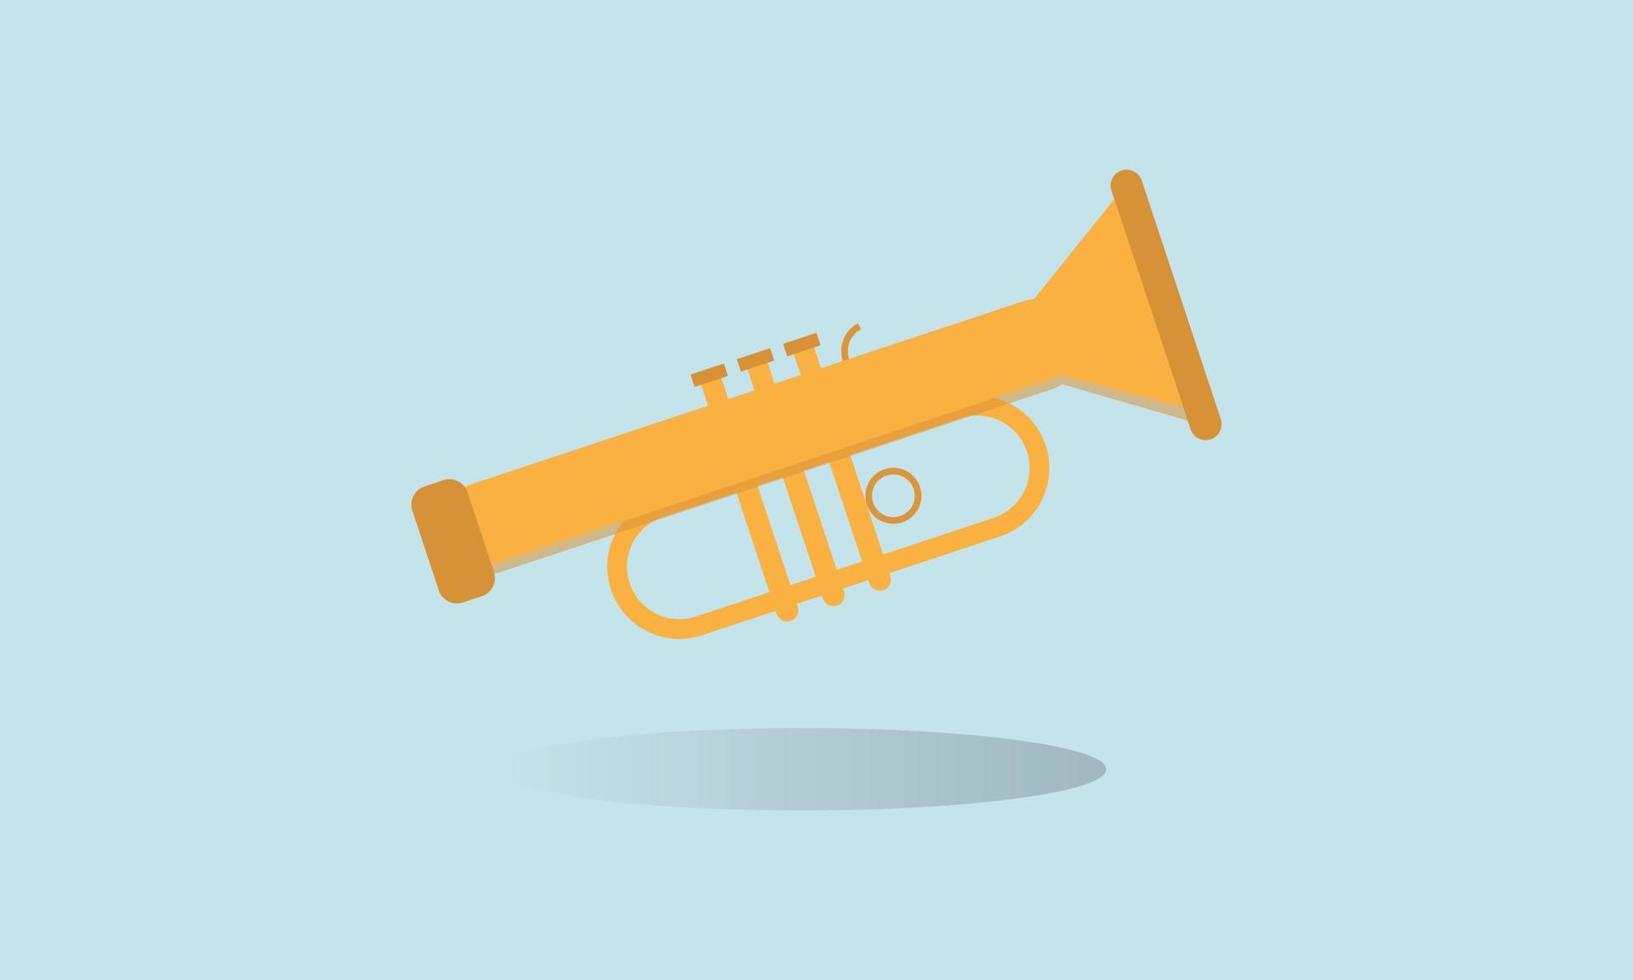 trompete para música jazz e música de melodia de entretenimento tocar ilustração vetorial de instrumento musical vetor